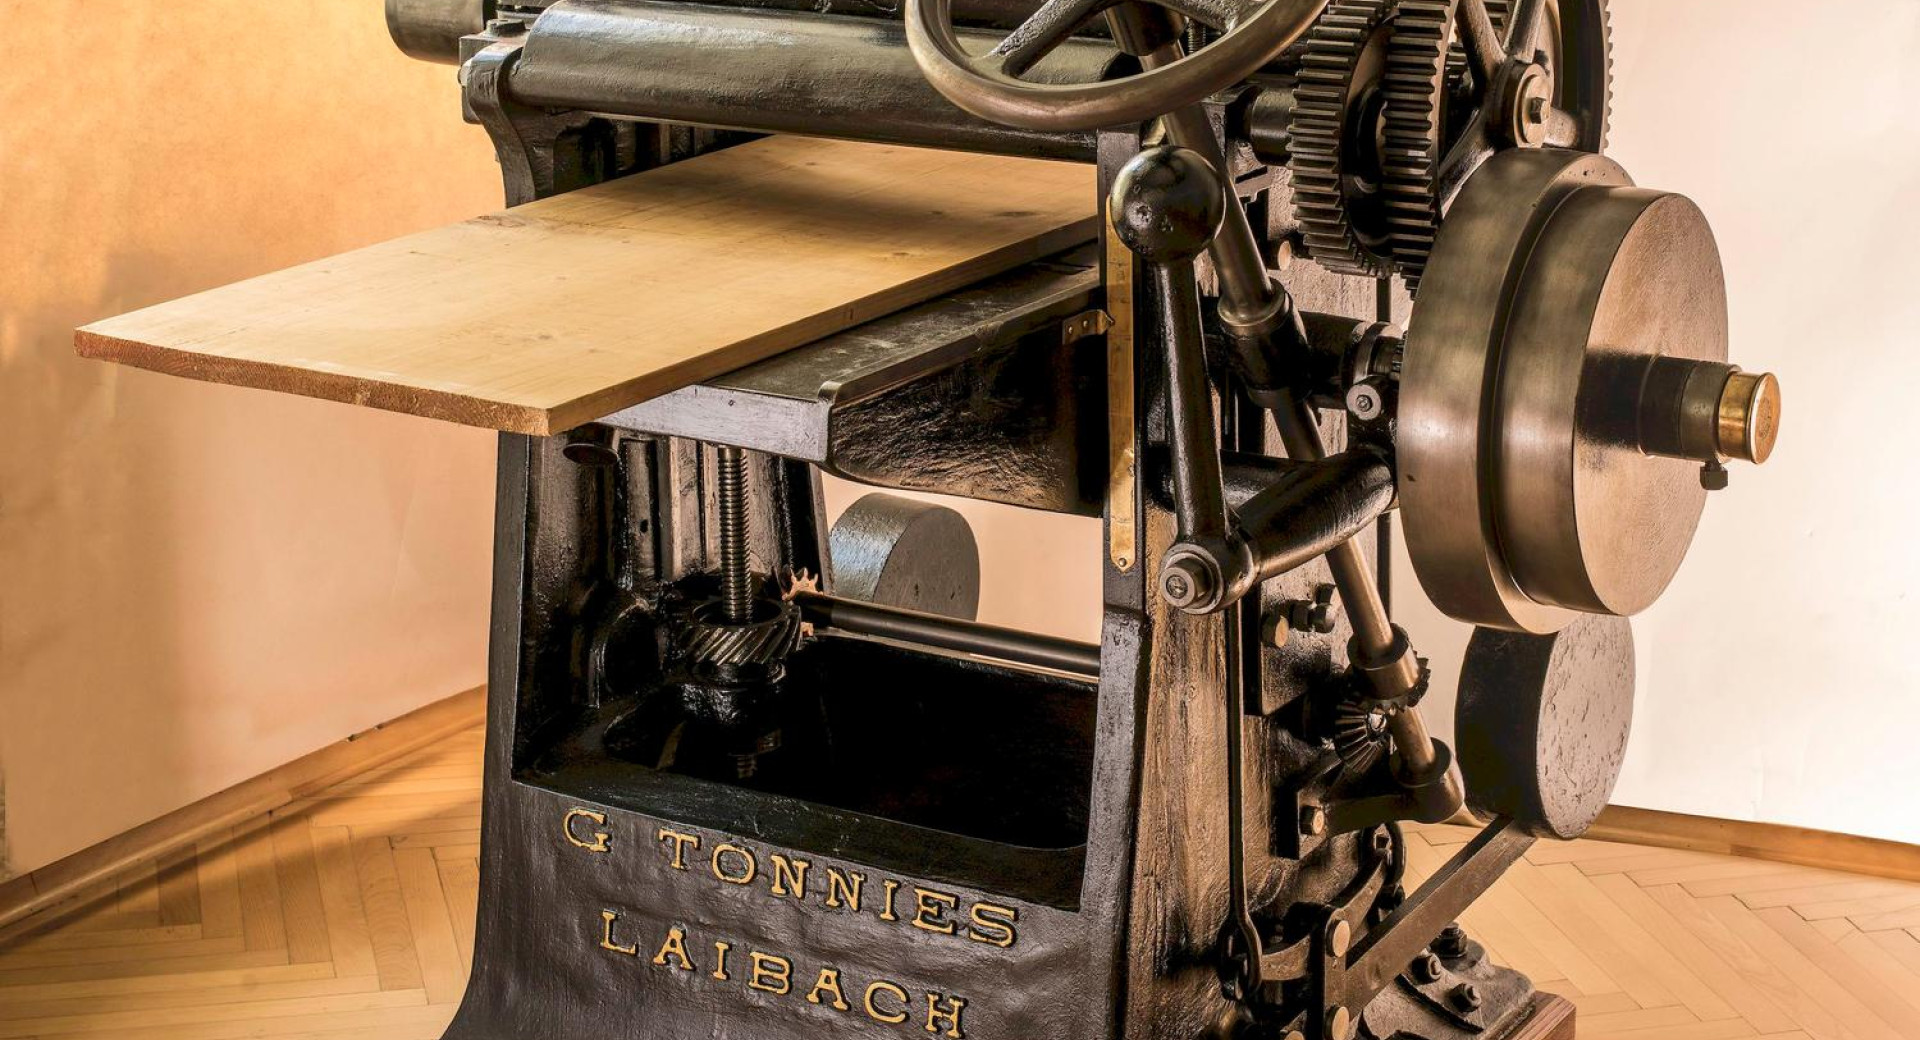 Skobeljni stroj v tehničnem muzeju.